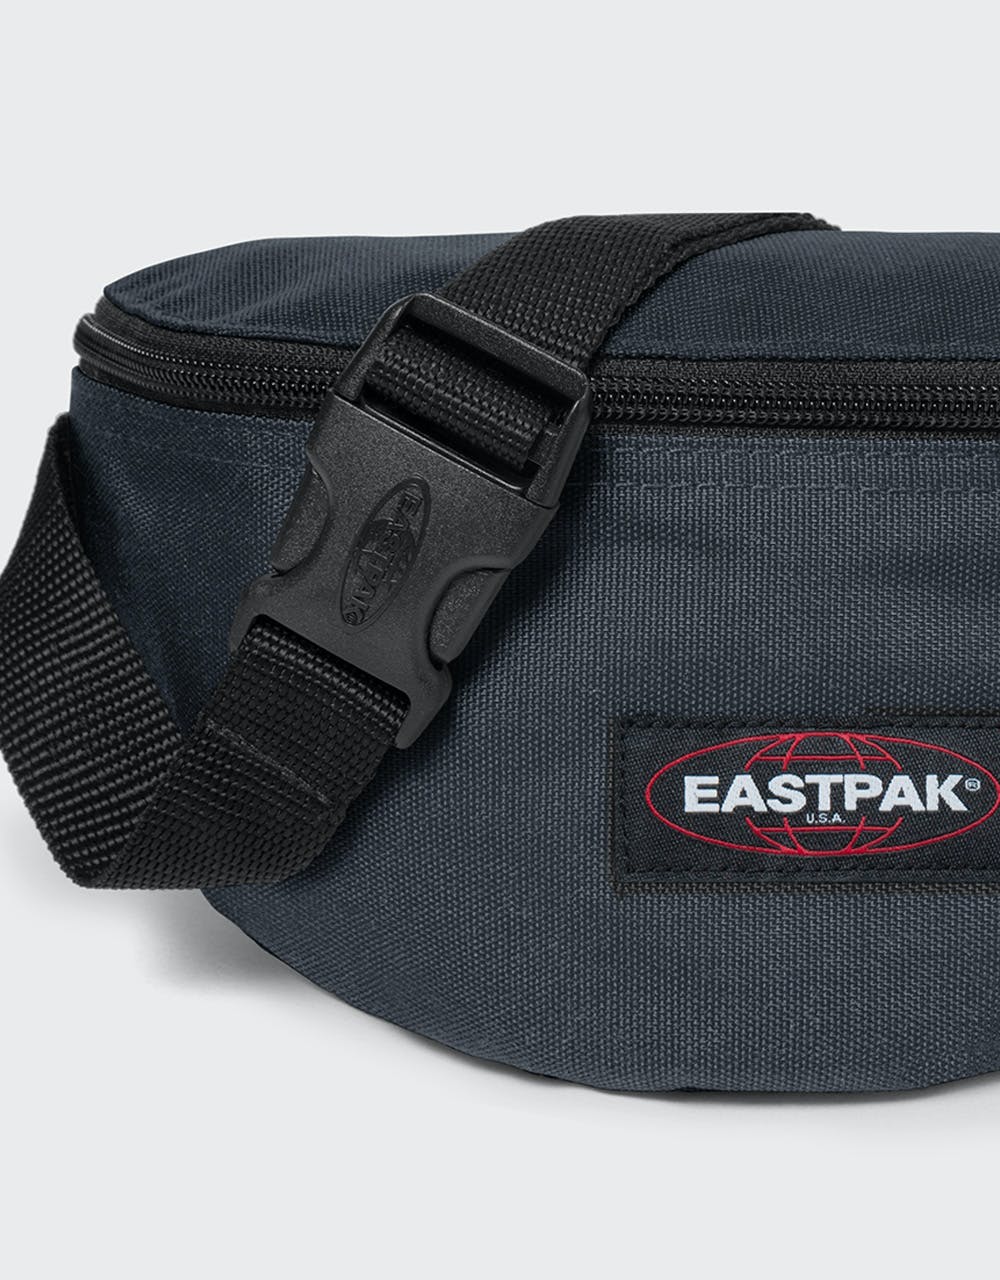 Eastpak Springer Cross Body Bag - Cloud Navy